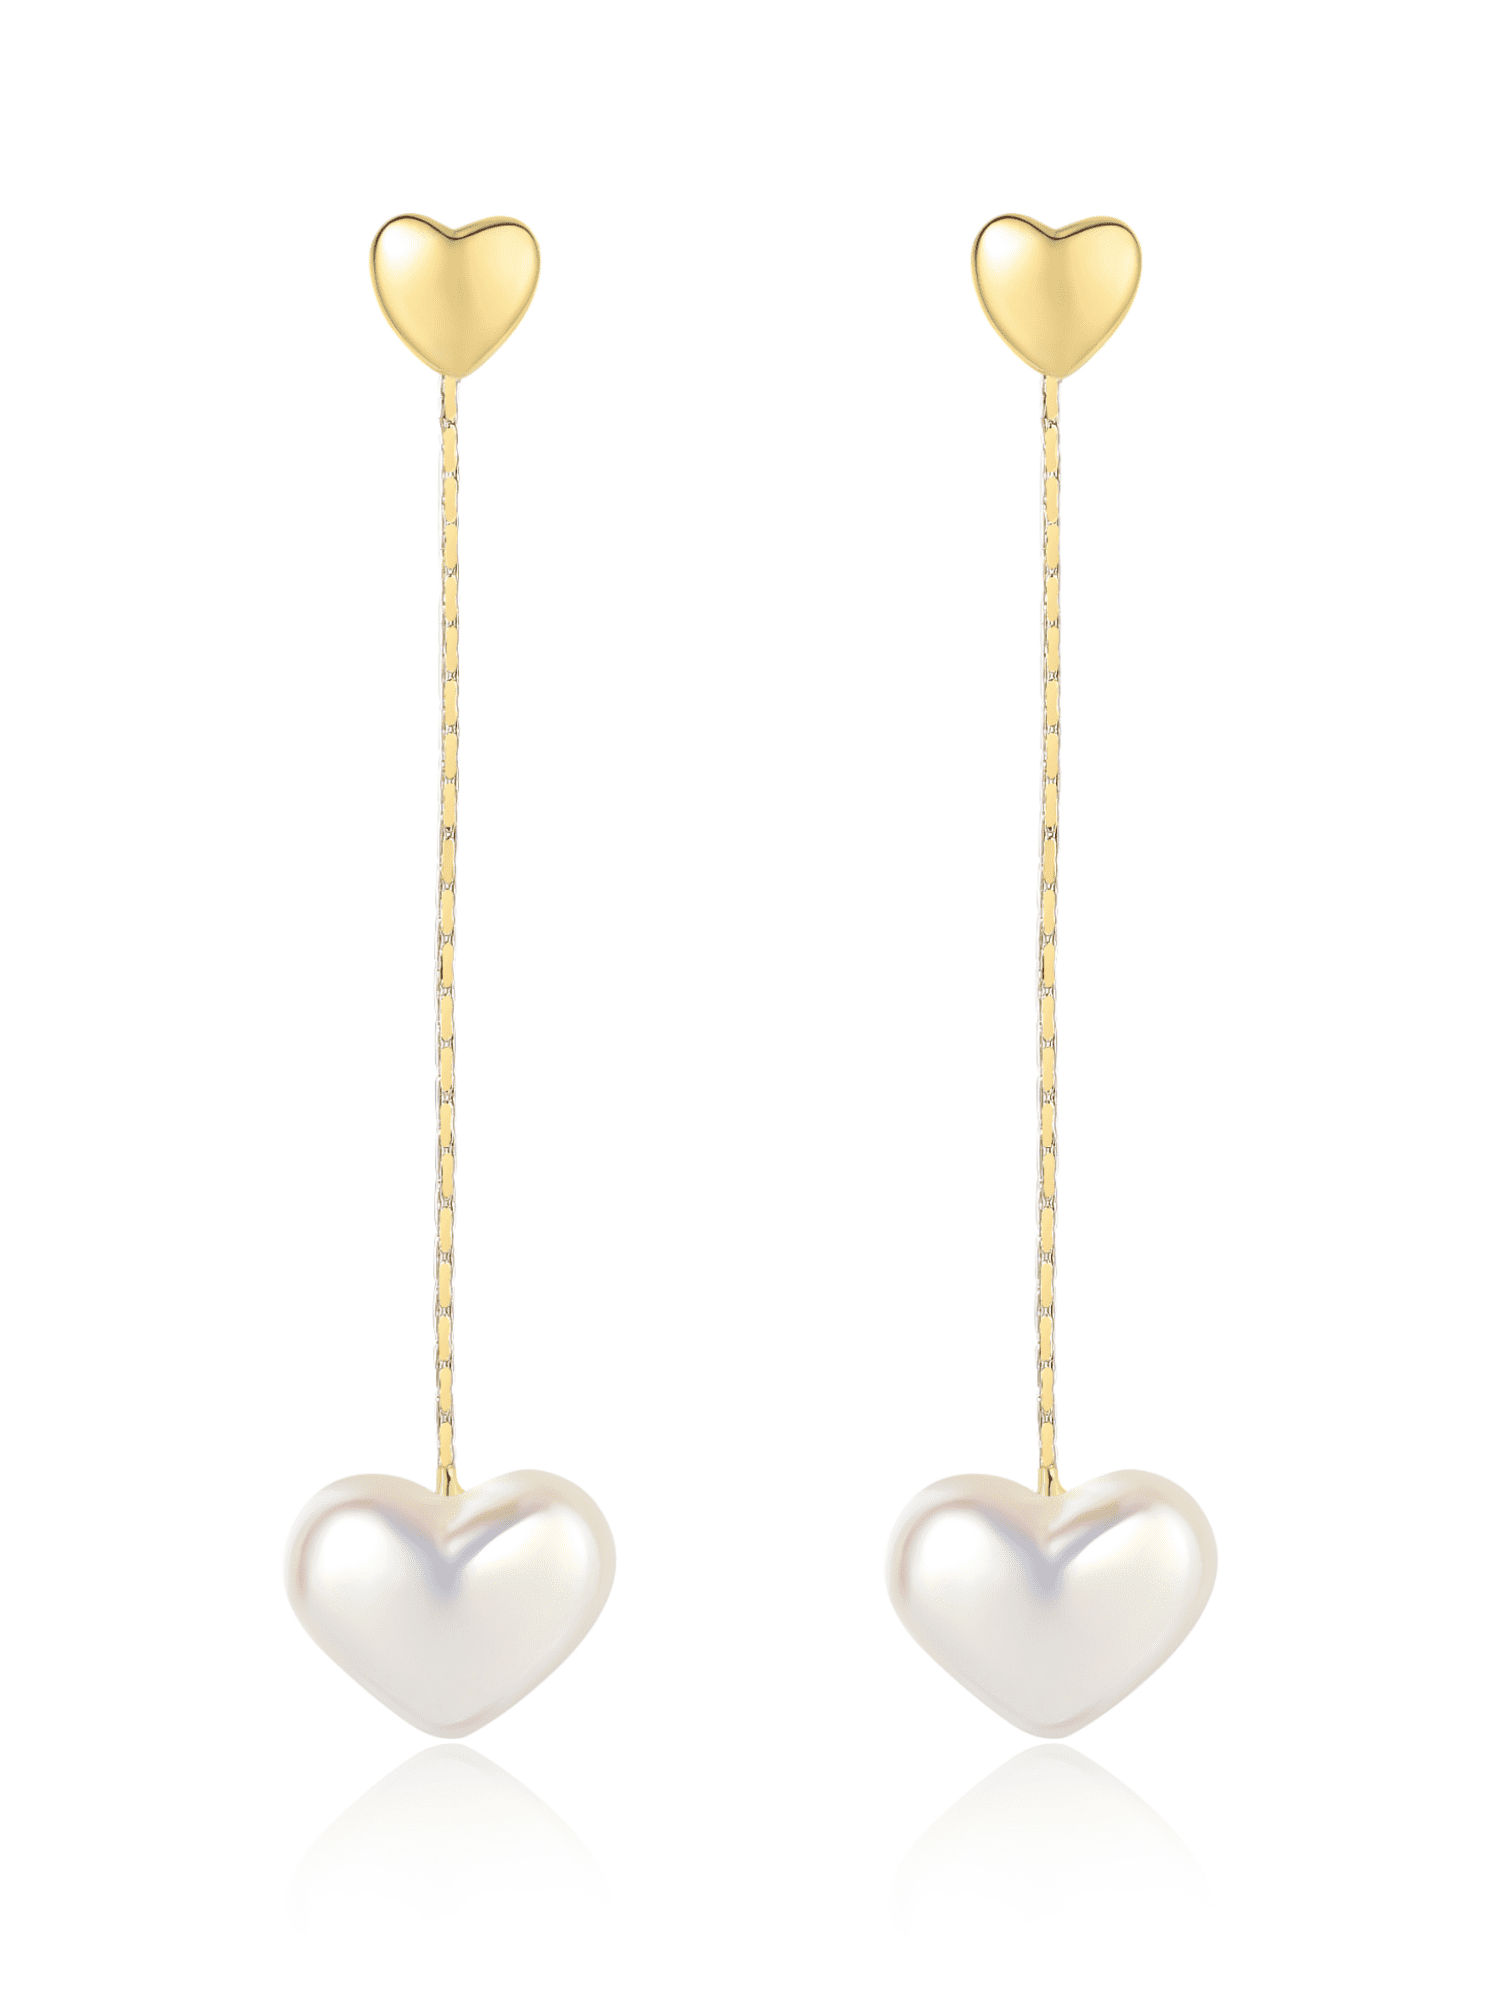 gold plated silver earrings crystal earrings heart earrings valentine's earrings pearl earrings heart earrings